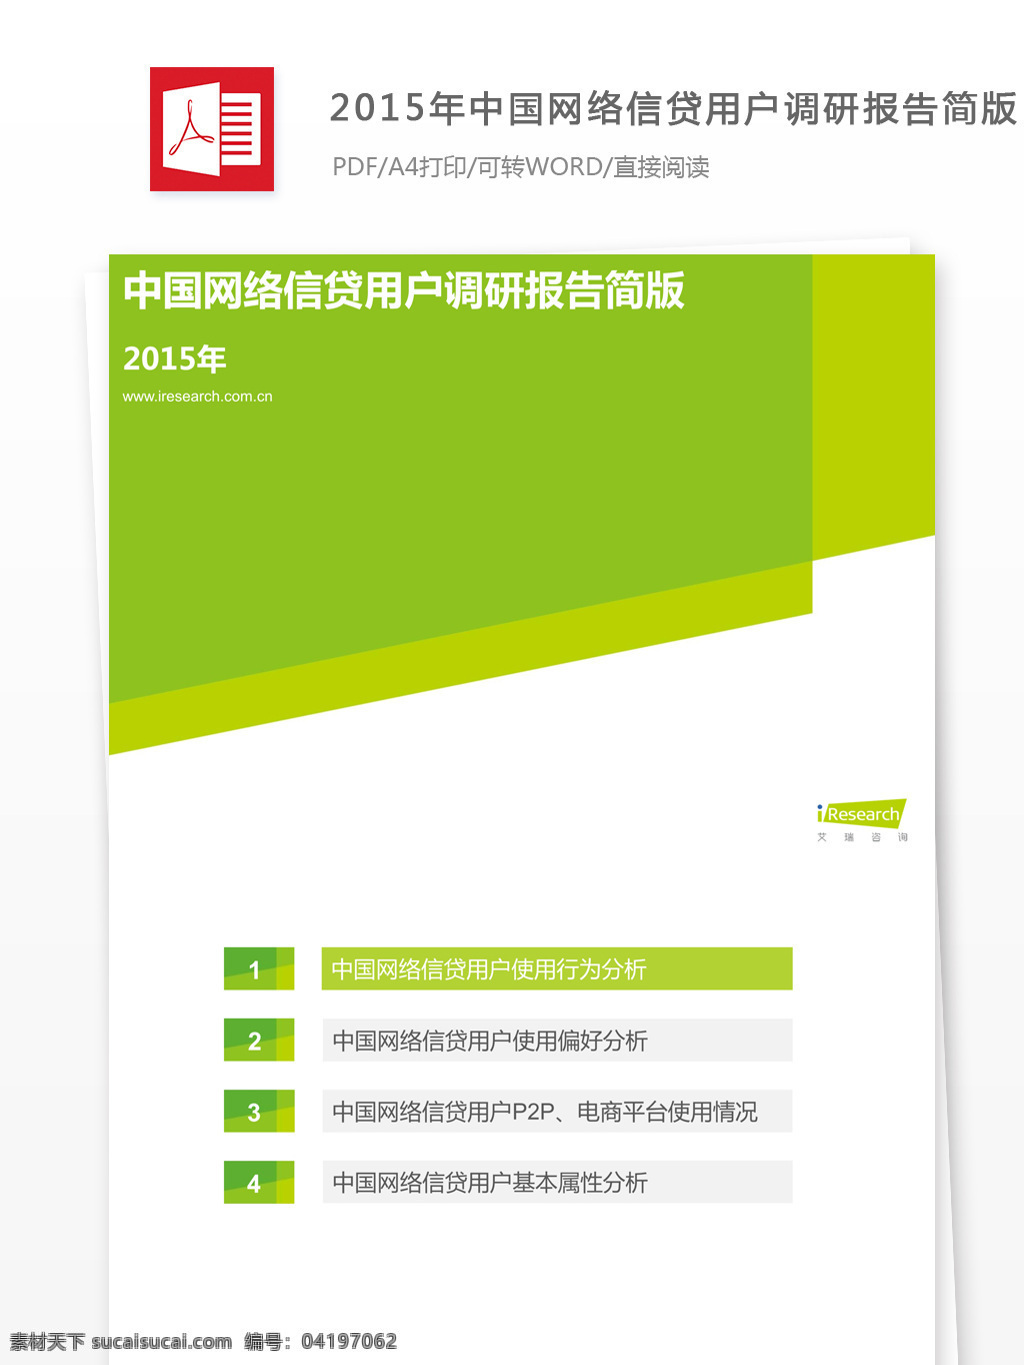 2015 年 中国网 络 信贷 用户 调研报告 网络 行业分析报告 数据报告 商业报告模板 研究报告